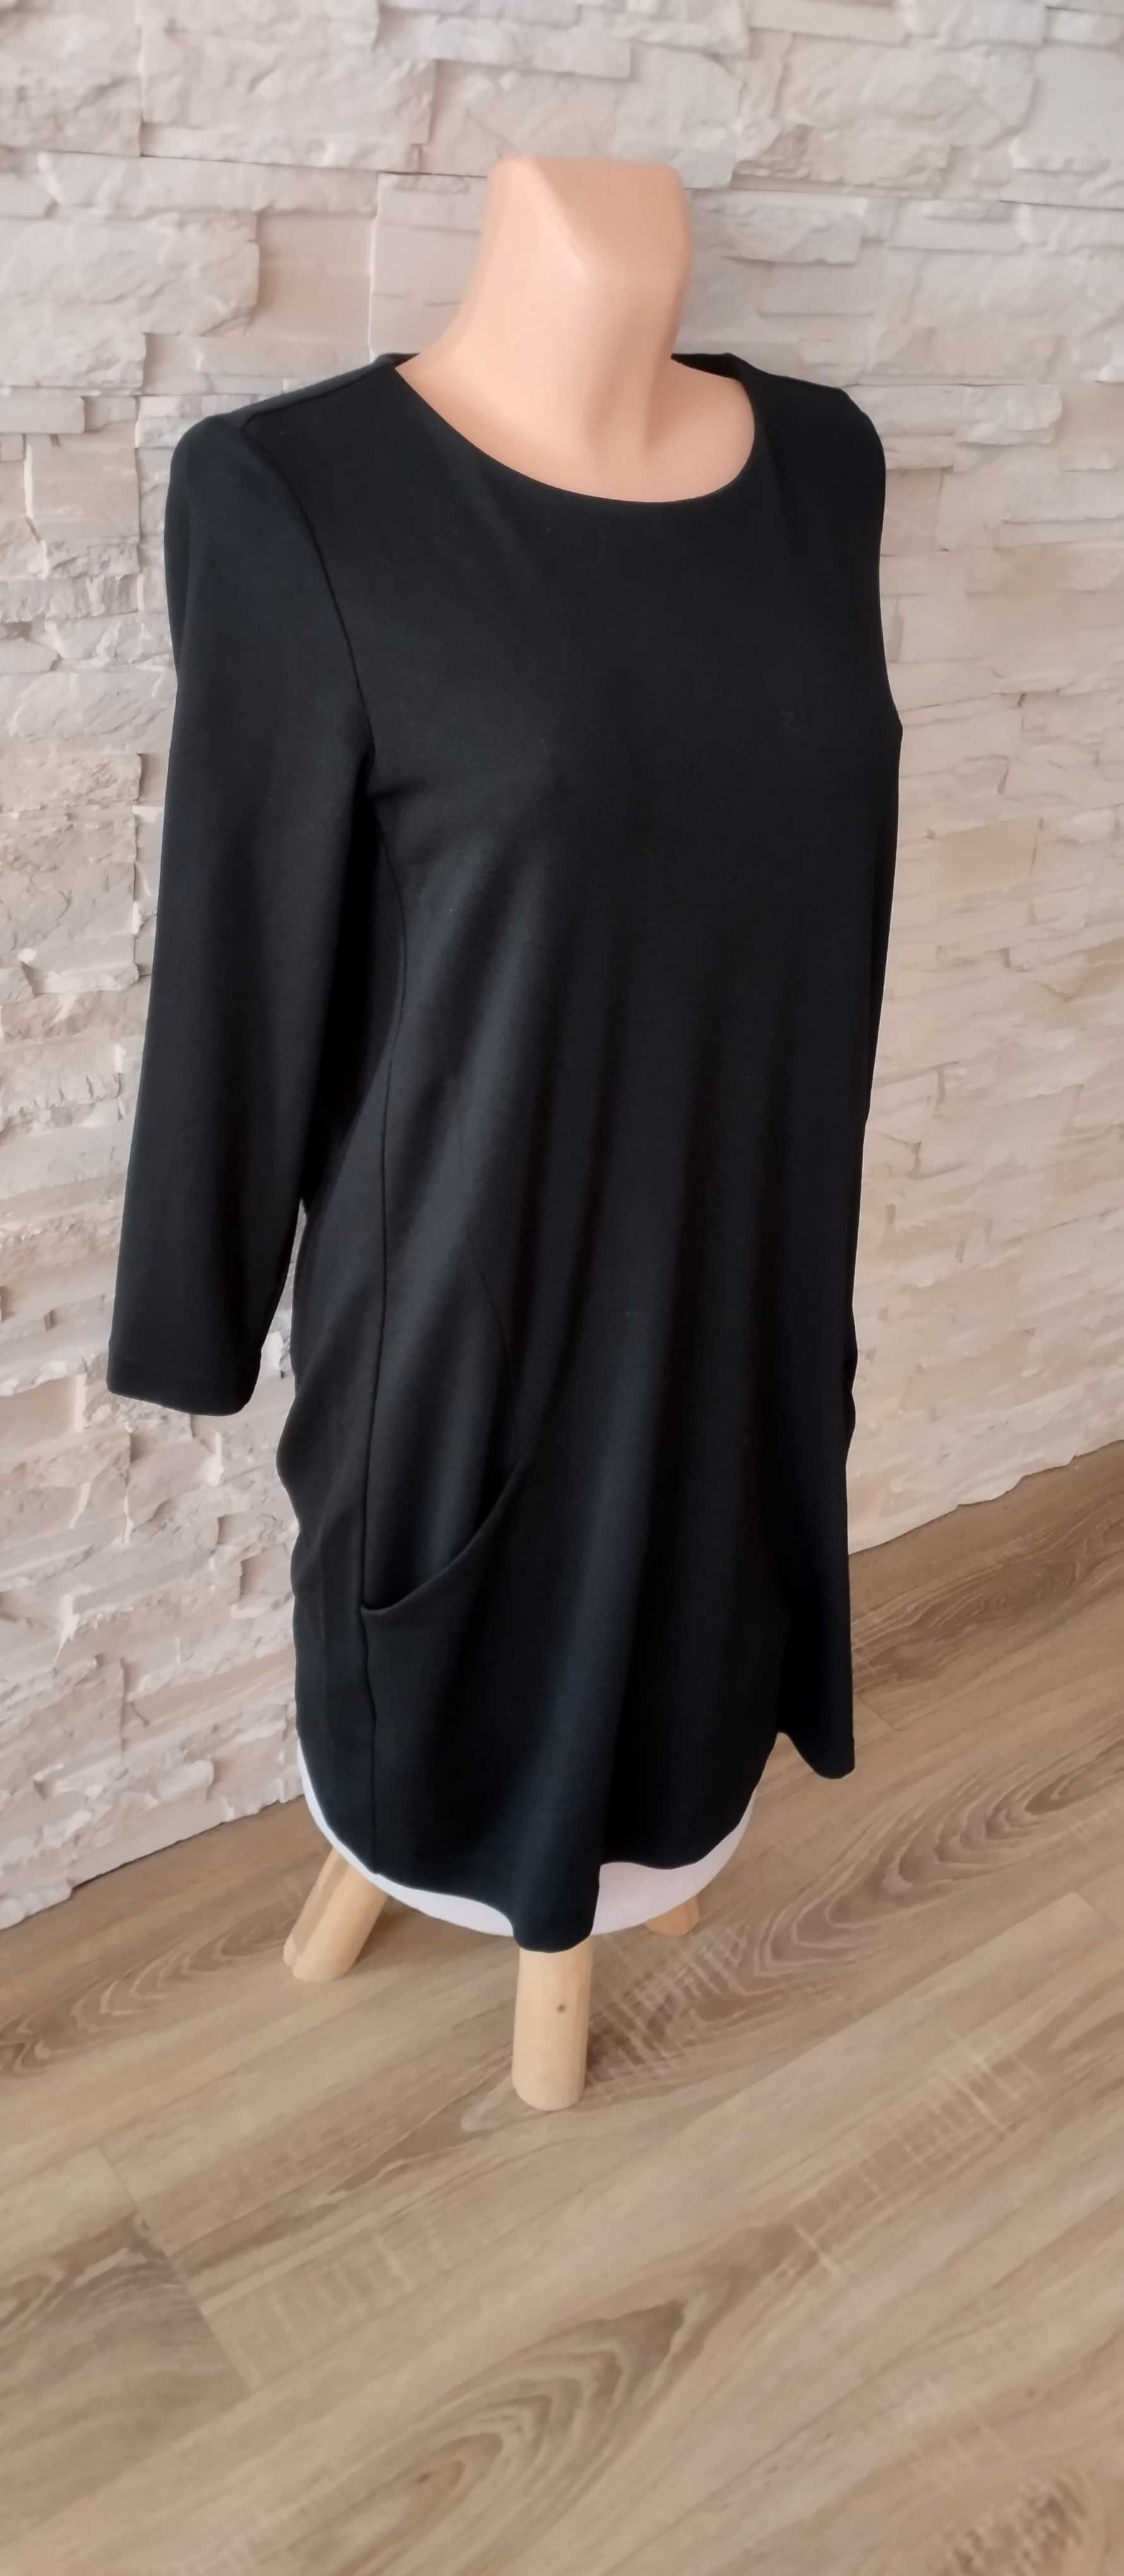 Sukienka z długim rękawem tunika ciążowa damska czarna M/38 H&M